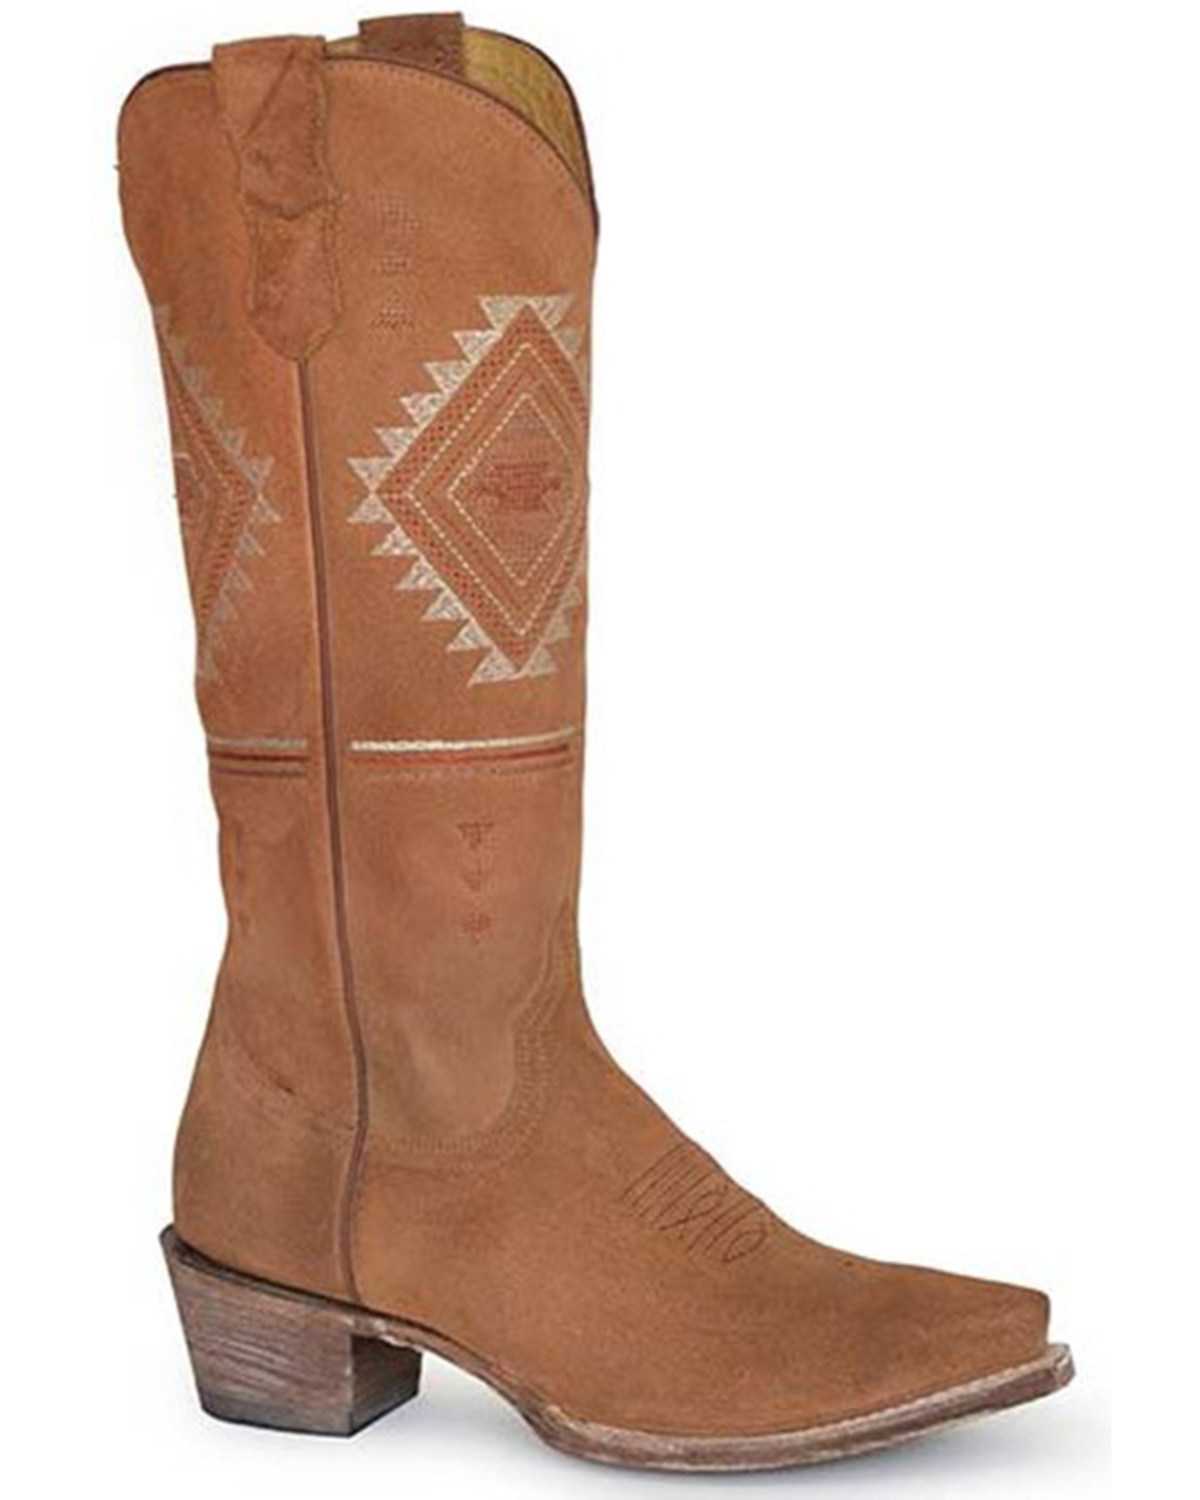 Roper Women's Southwestern Western Boots - Snip Toe